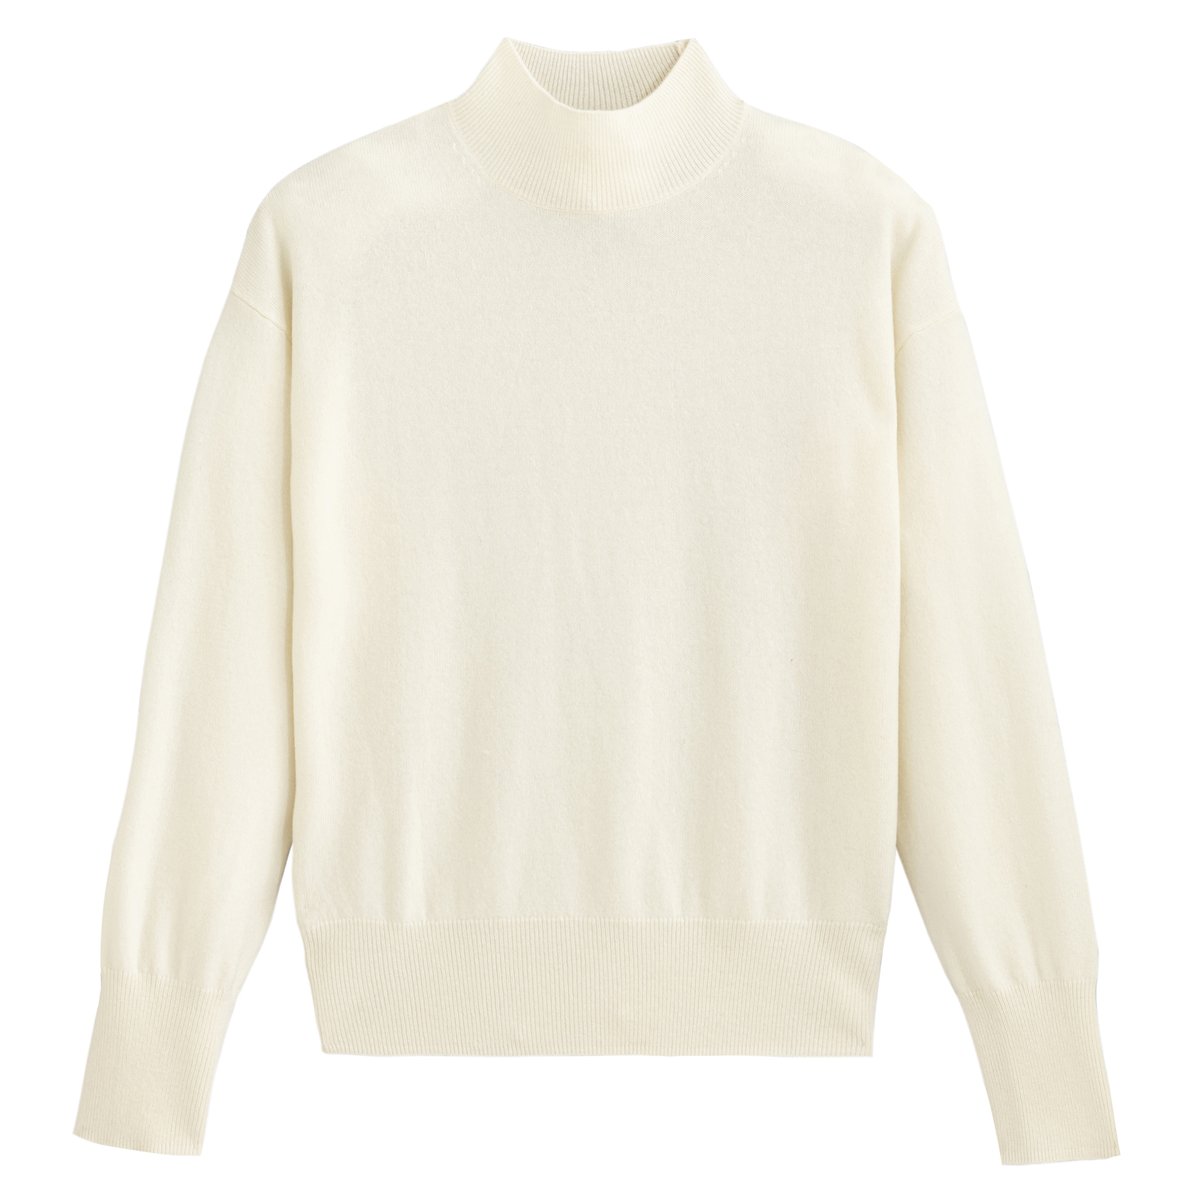 Пуловер La Redoute Из кашемира и шерсти с отворачивающимся воротником S белый, размер S - фото 5